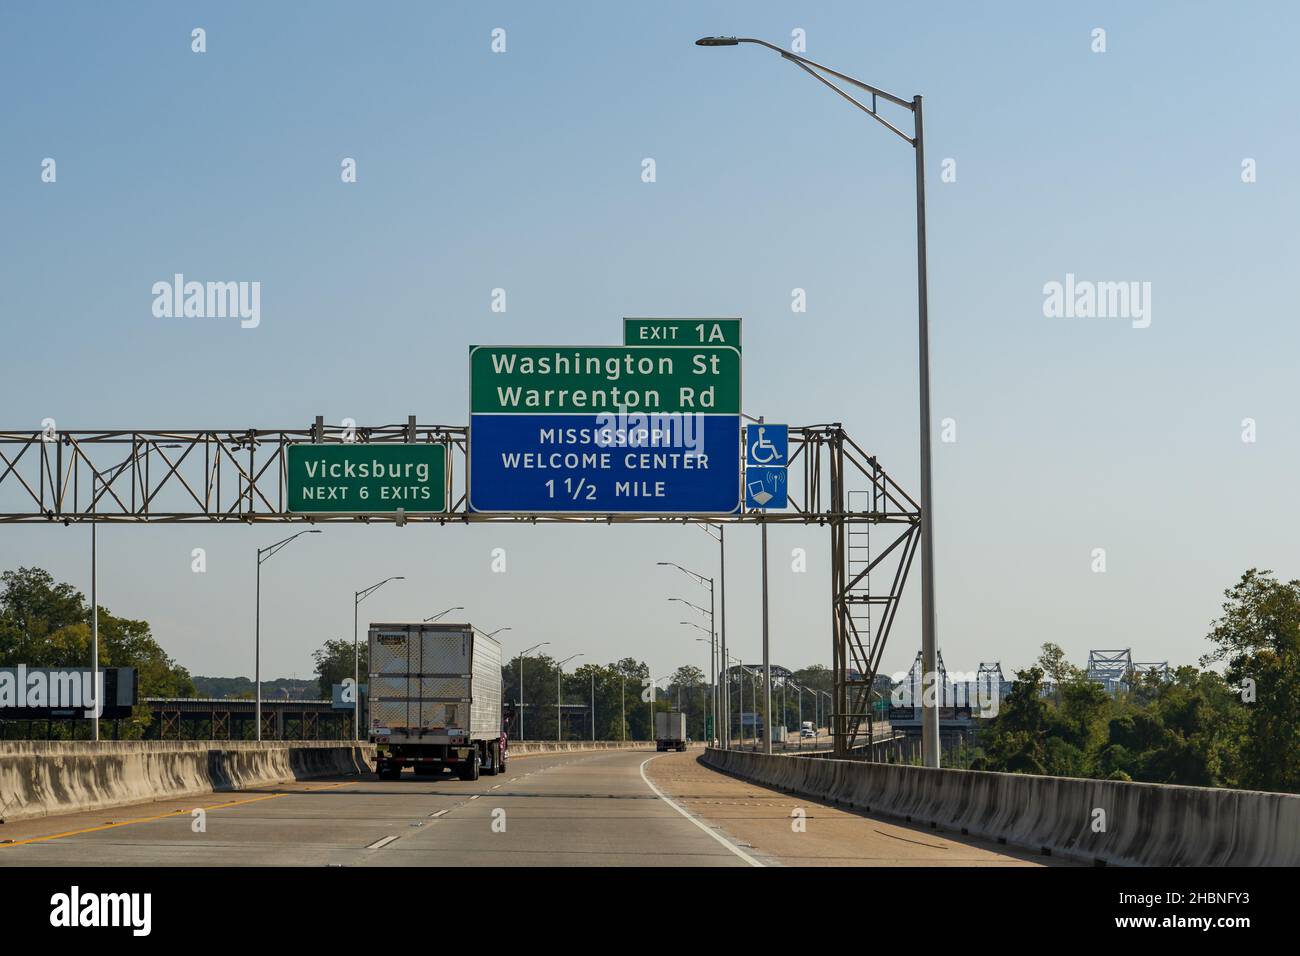 Delta, Louisiane - 23 octobre 2021 : signalisation sur la route I-20 pour les sorties de Vicksburg et le Mississippi Welcome Center. Banque D'Images